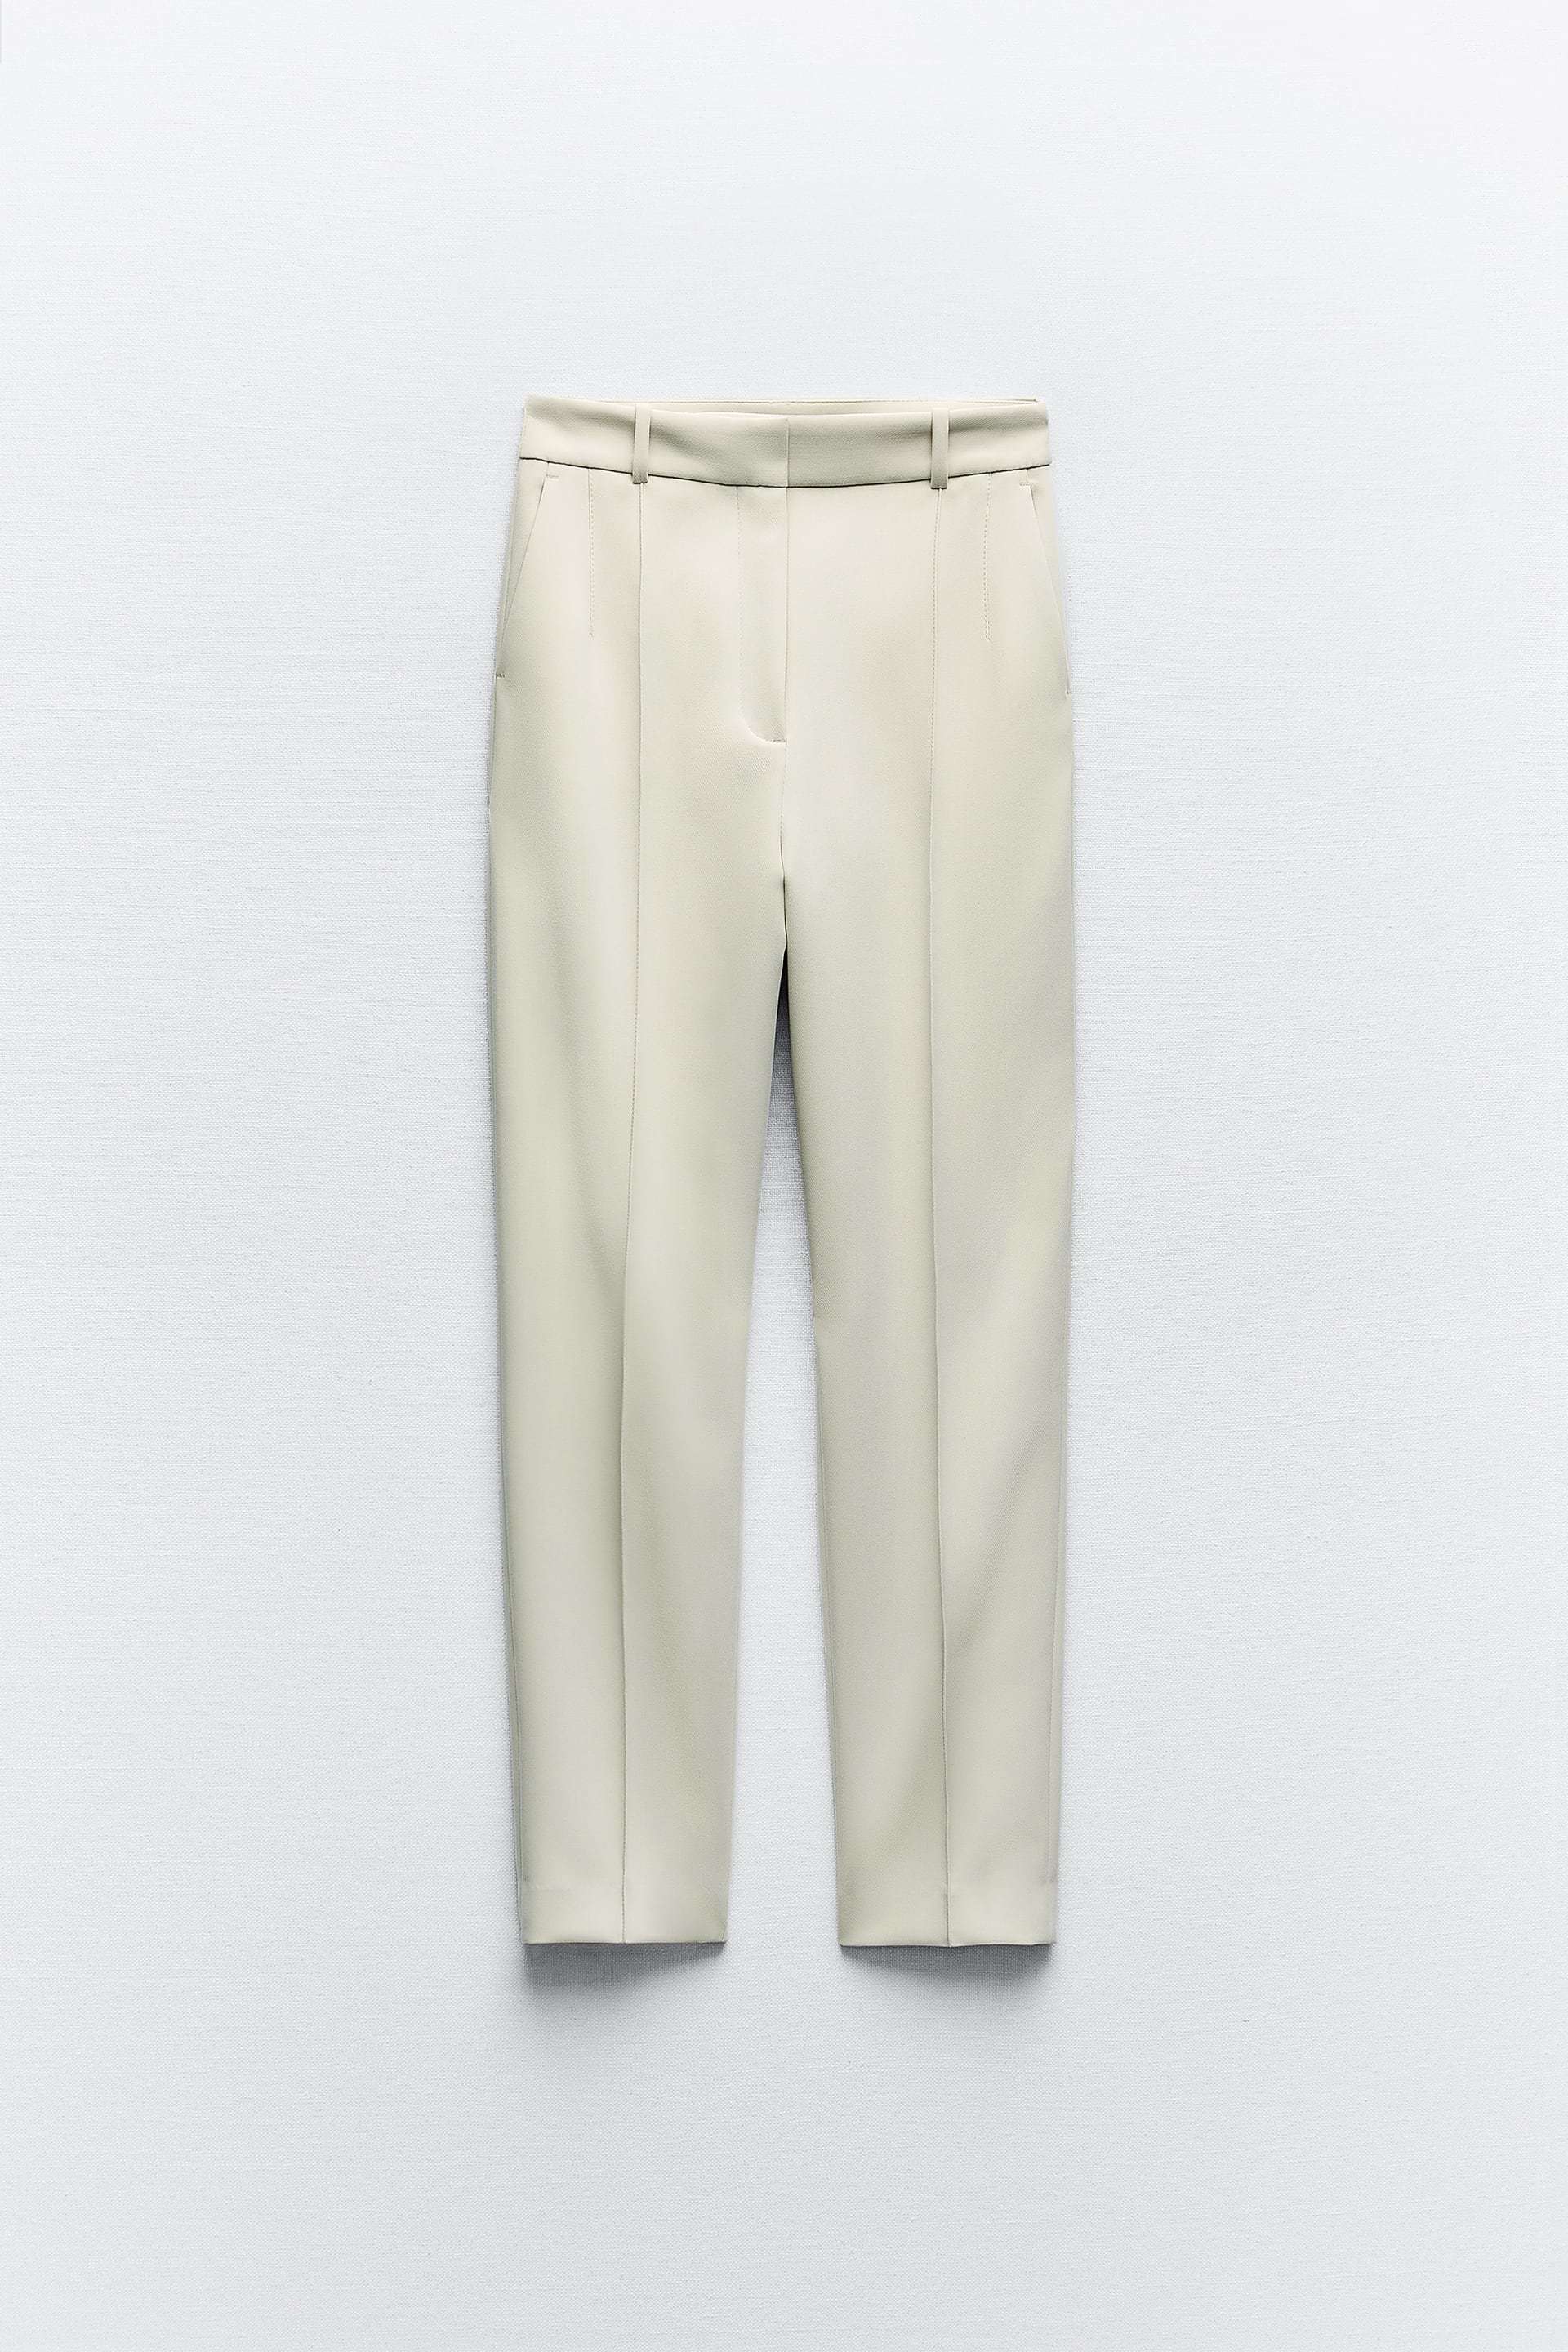 Pantalón tobillero de tiro alto de Zara (29,95 euros).